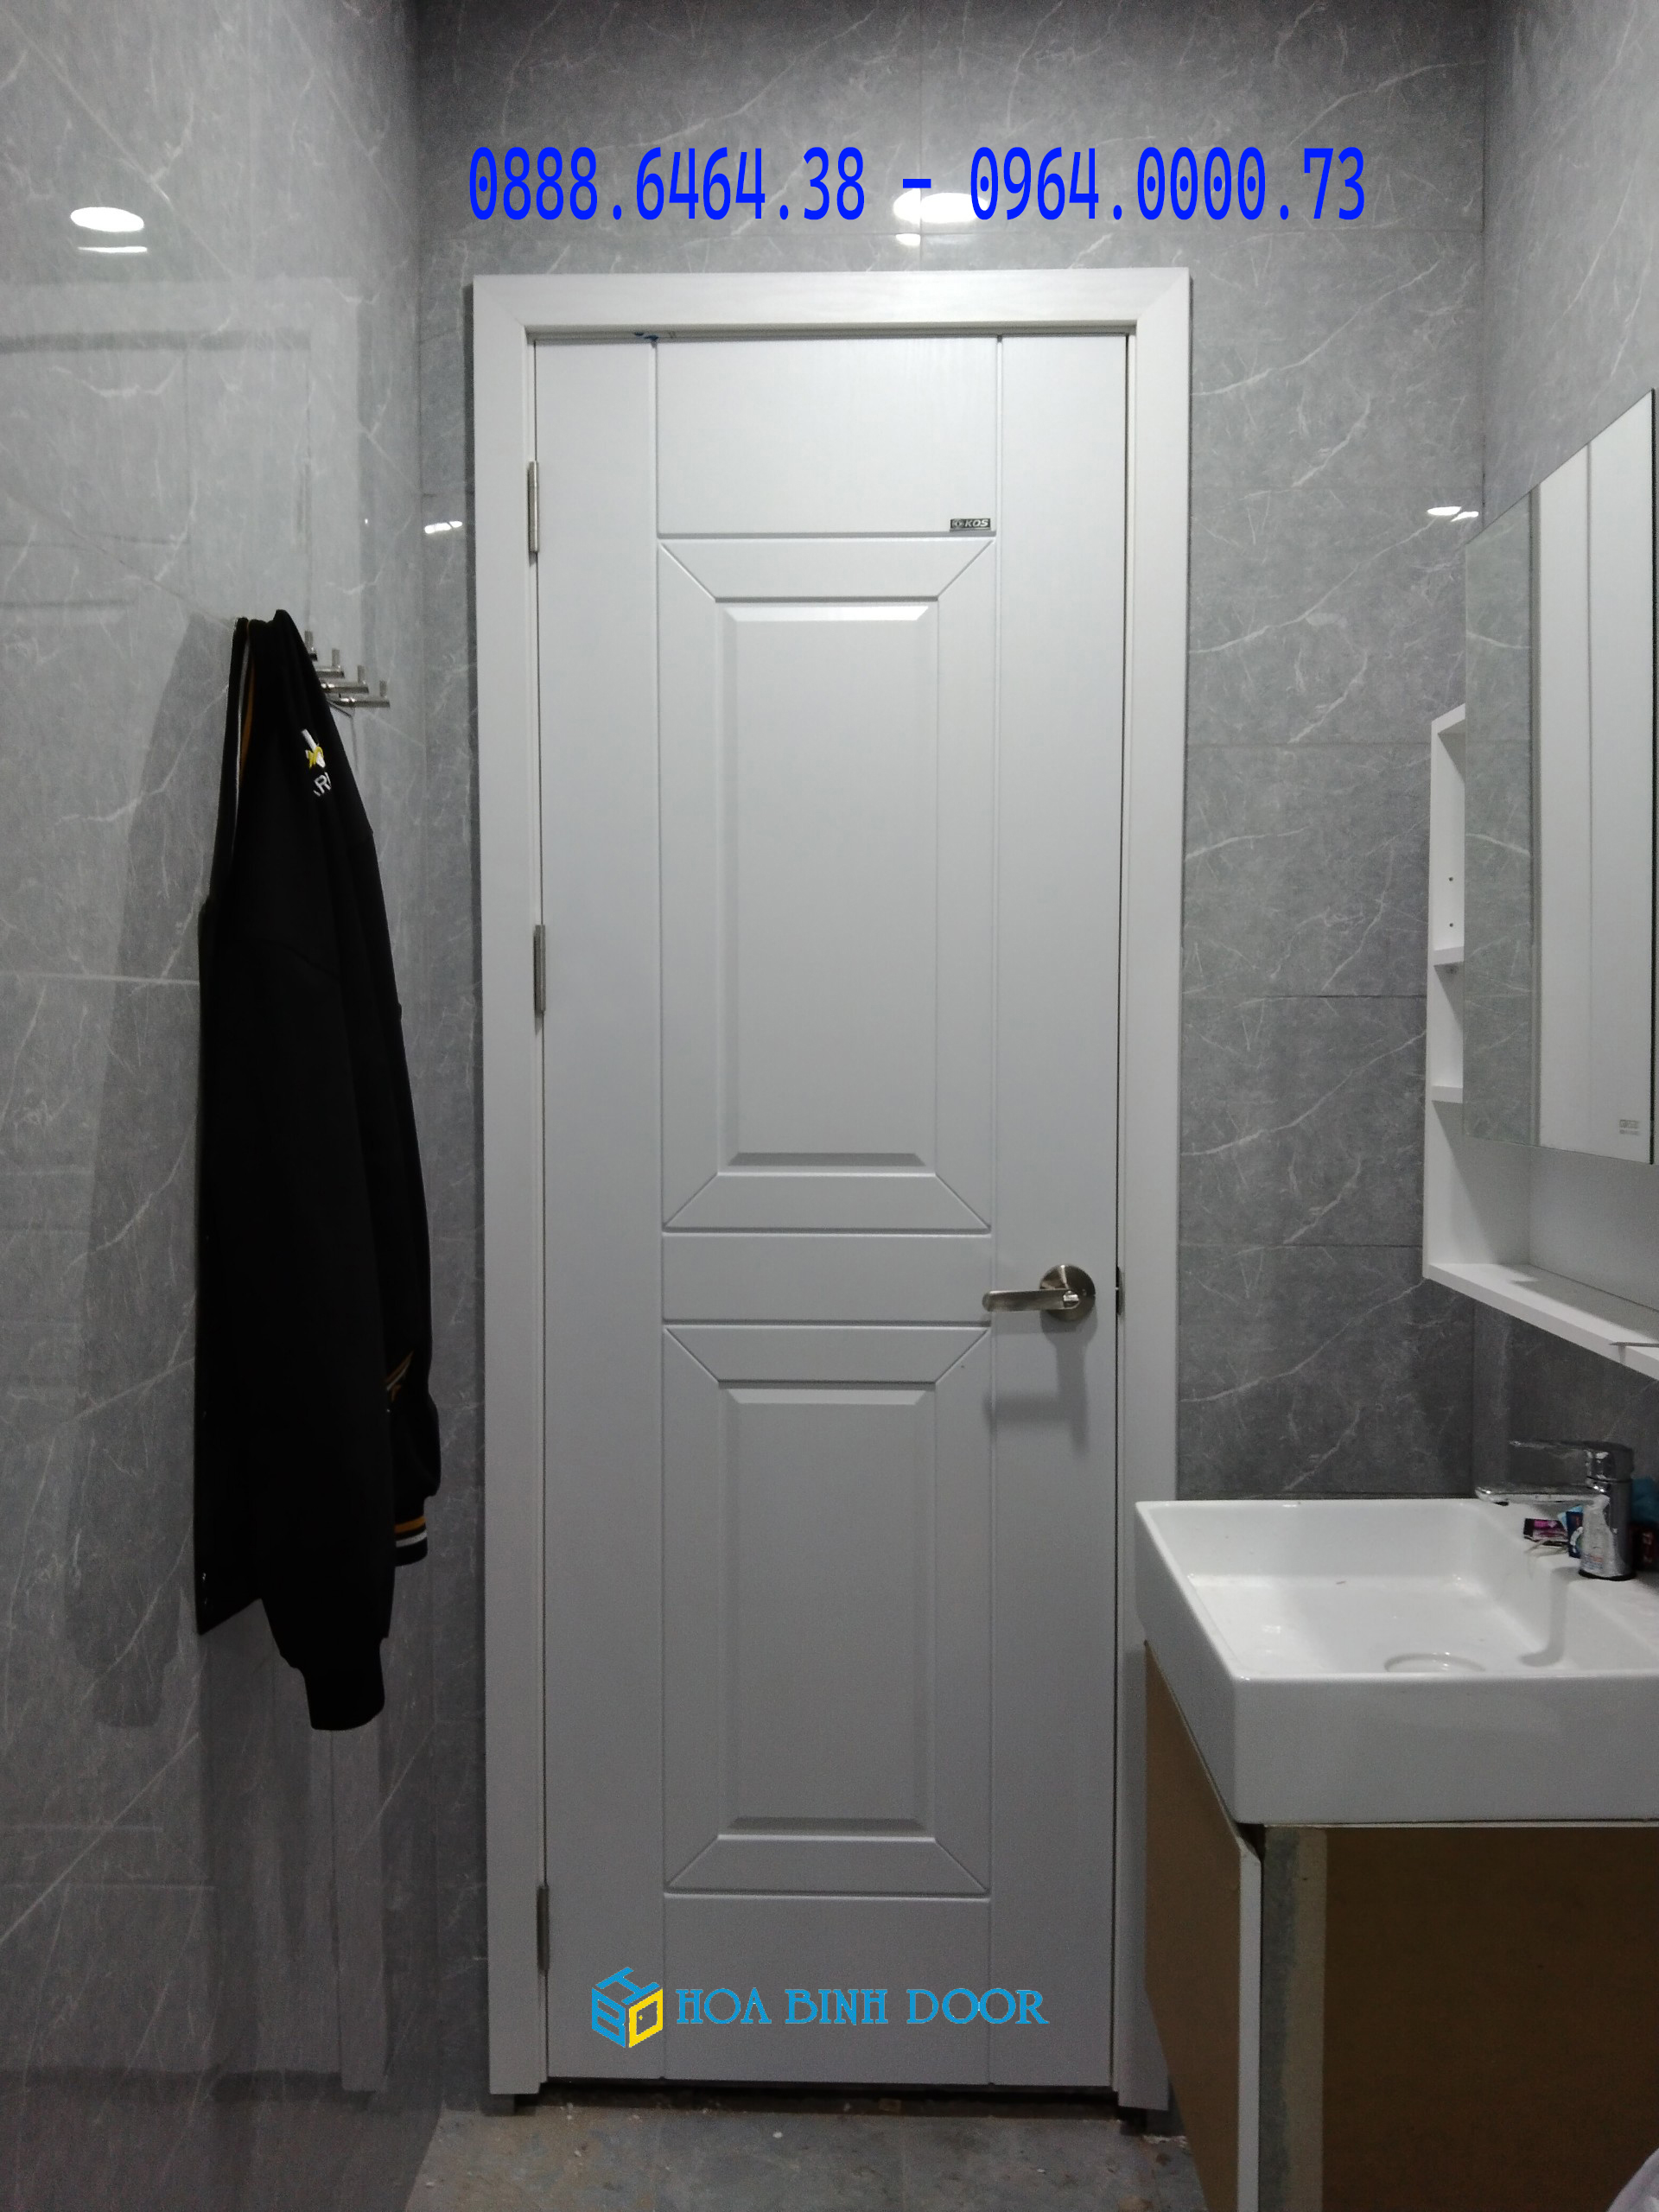 Nội, ngoại thất: Những lưu ý khi lựa chọn cửa nhà tắm | Nội thất đẹp tại HOABINH Z3570677642131_057f49672d1c5f9d378afe6c99c3683f